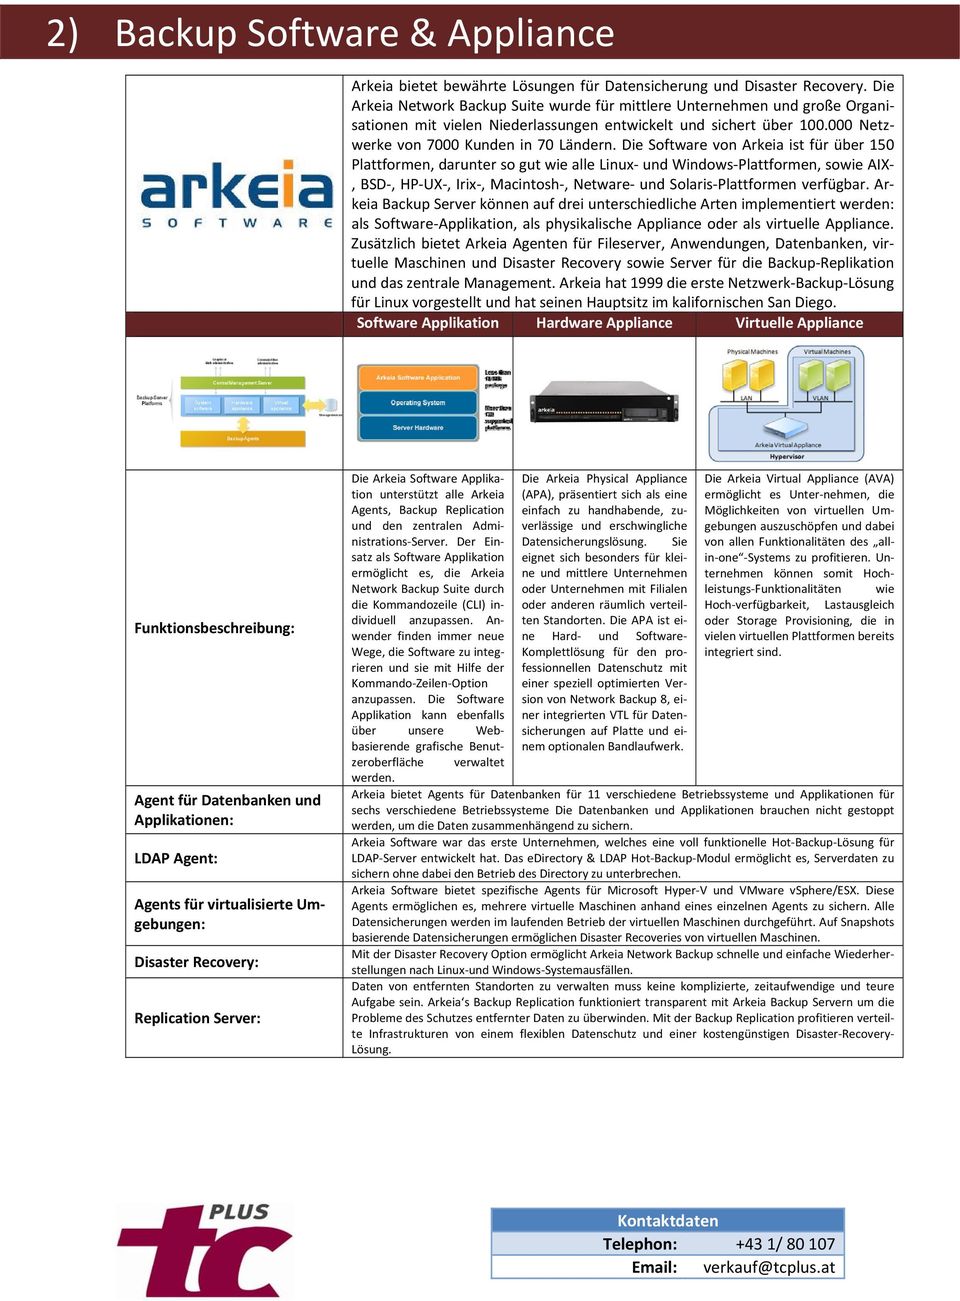 Die Software von Arkeia ist für über 150 Plattformen, darunter so gut wie alle Linux und Windows Plattformen, sowie AIX, BSD, HP UX, Irix, Macintosh, Netware und Solaris Plattformen verfügbar.